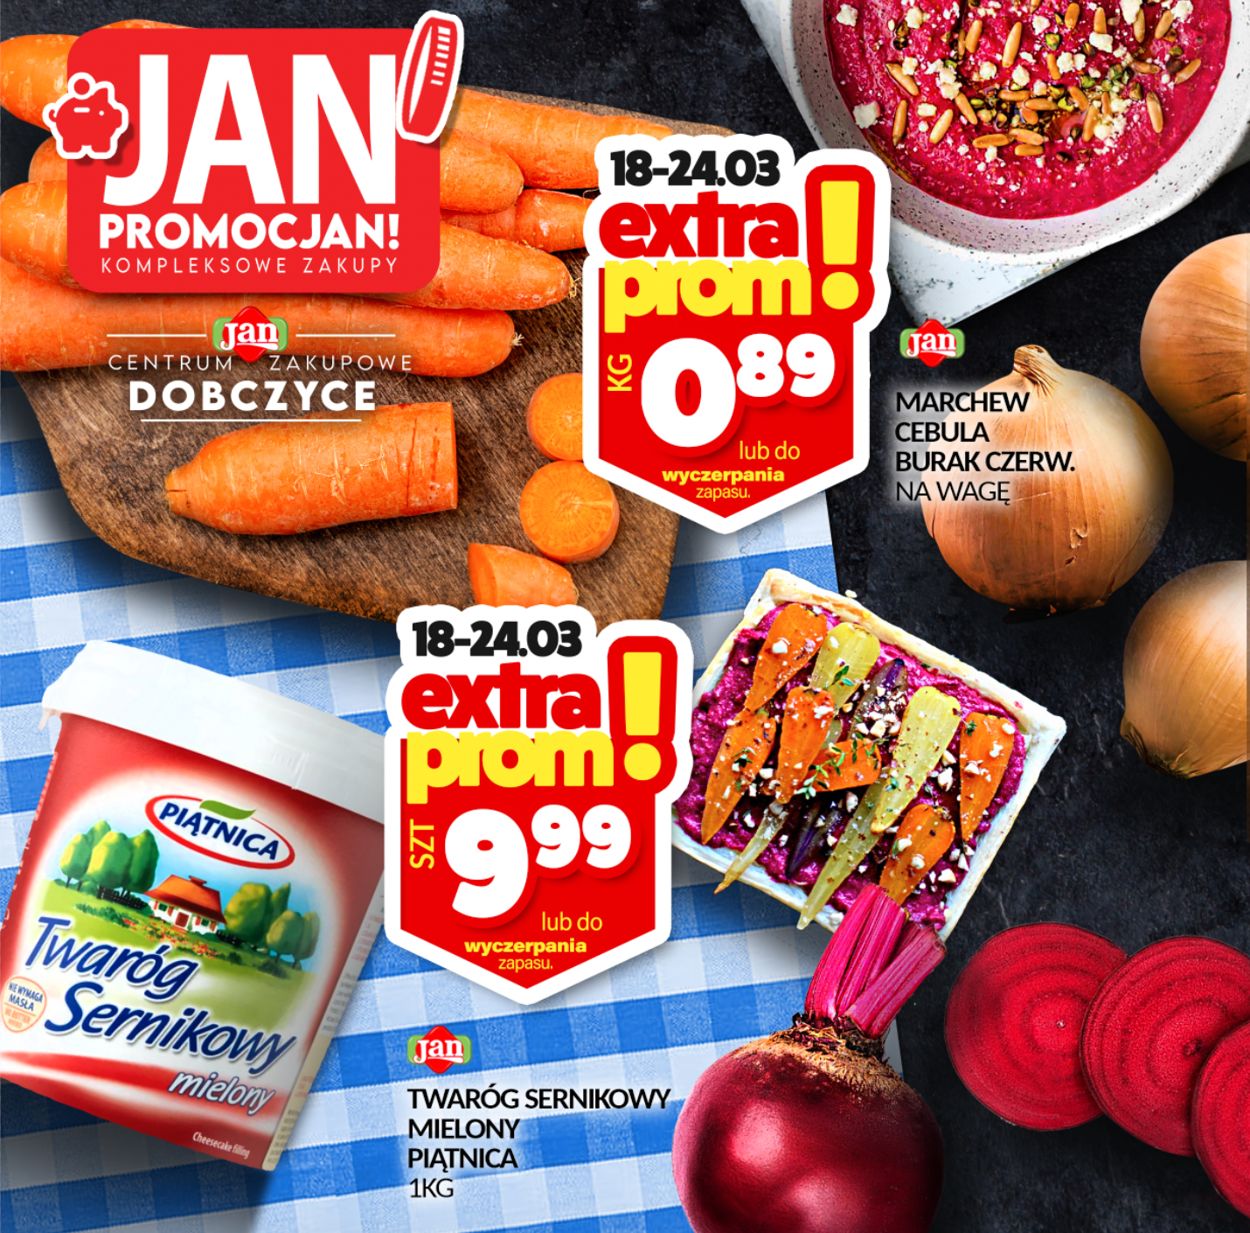 Market Jan Gazetka od 18.03.2021